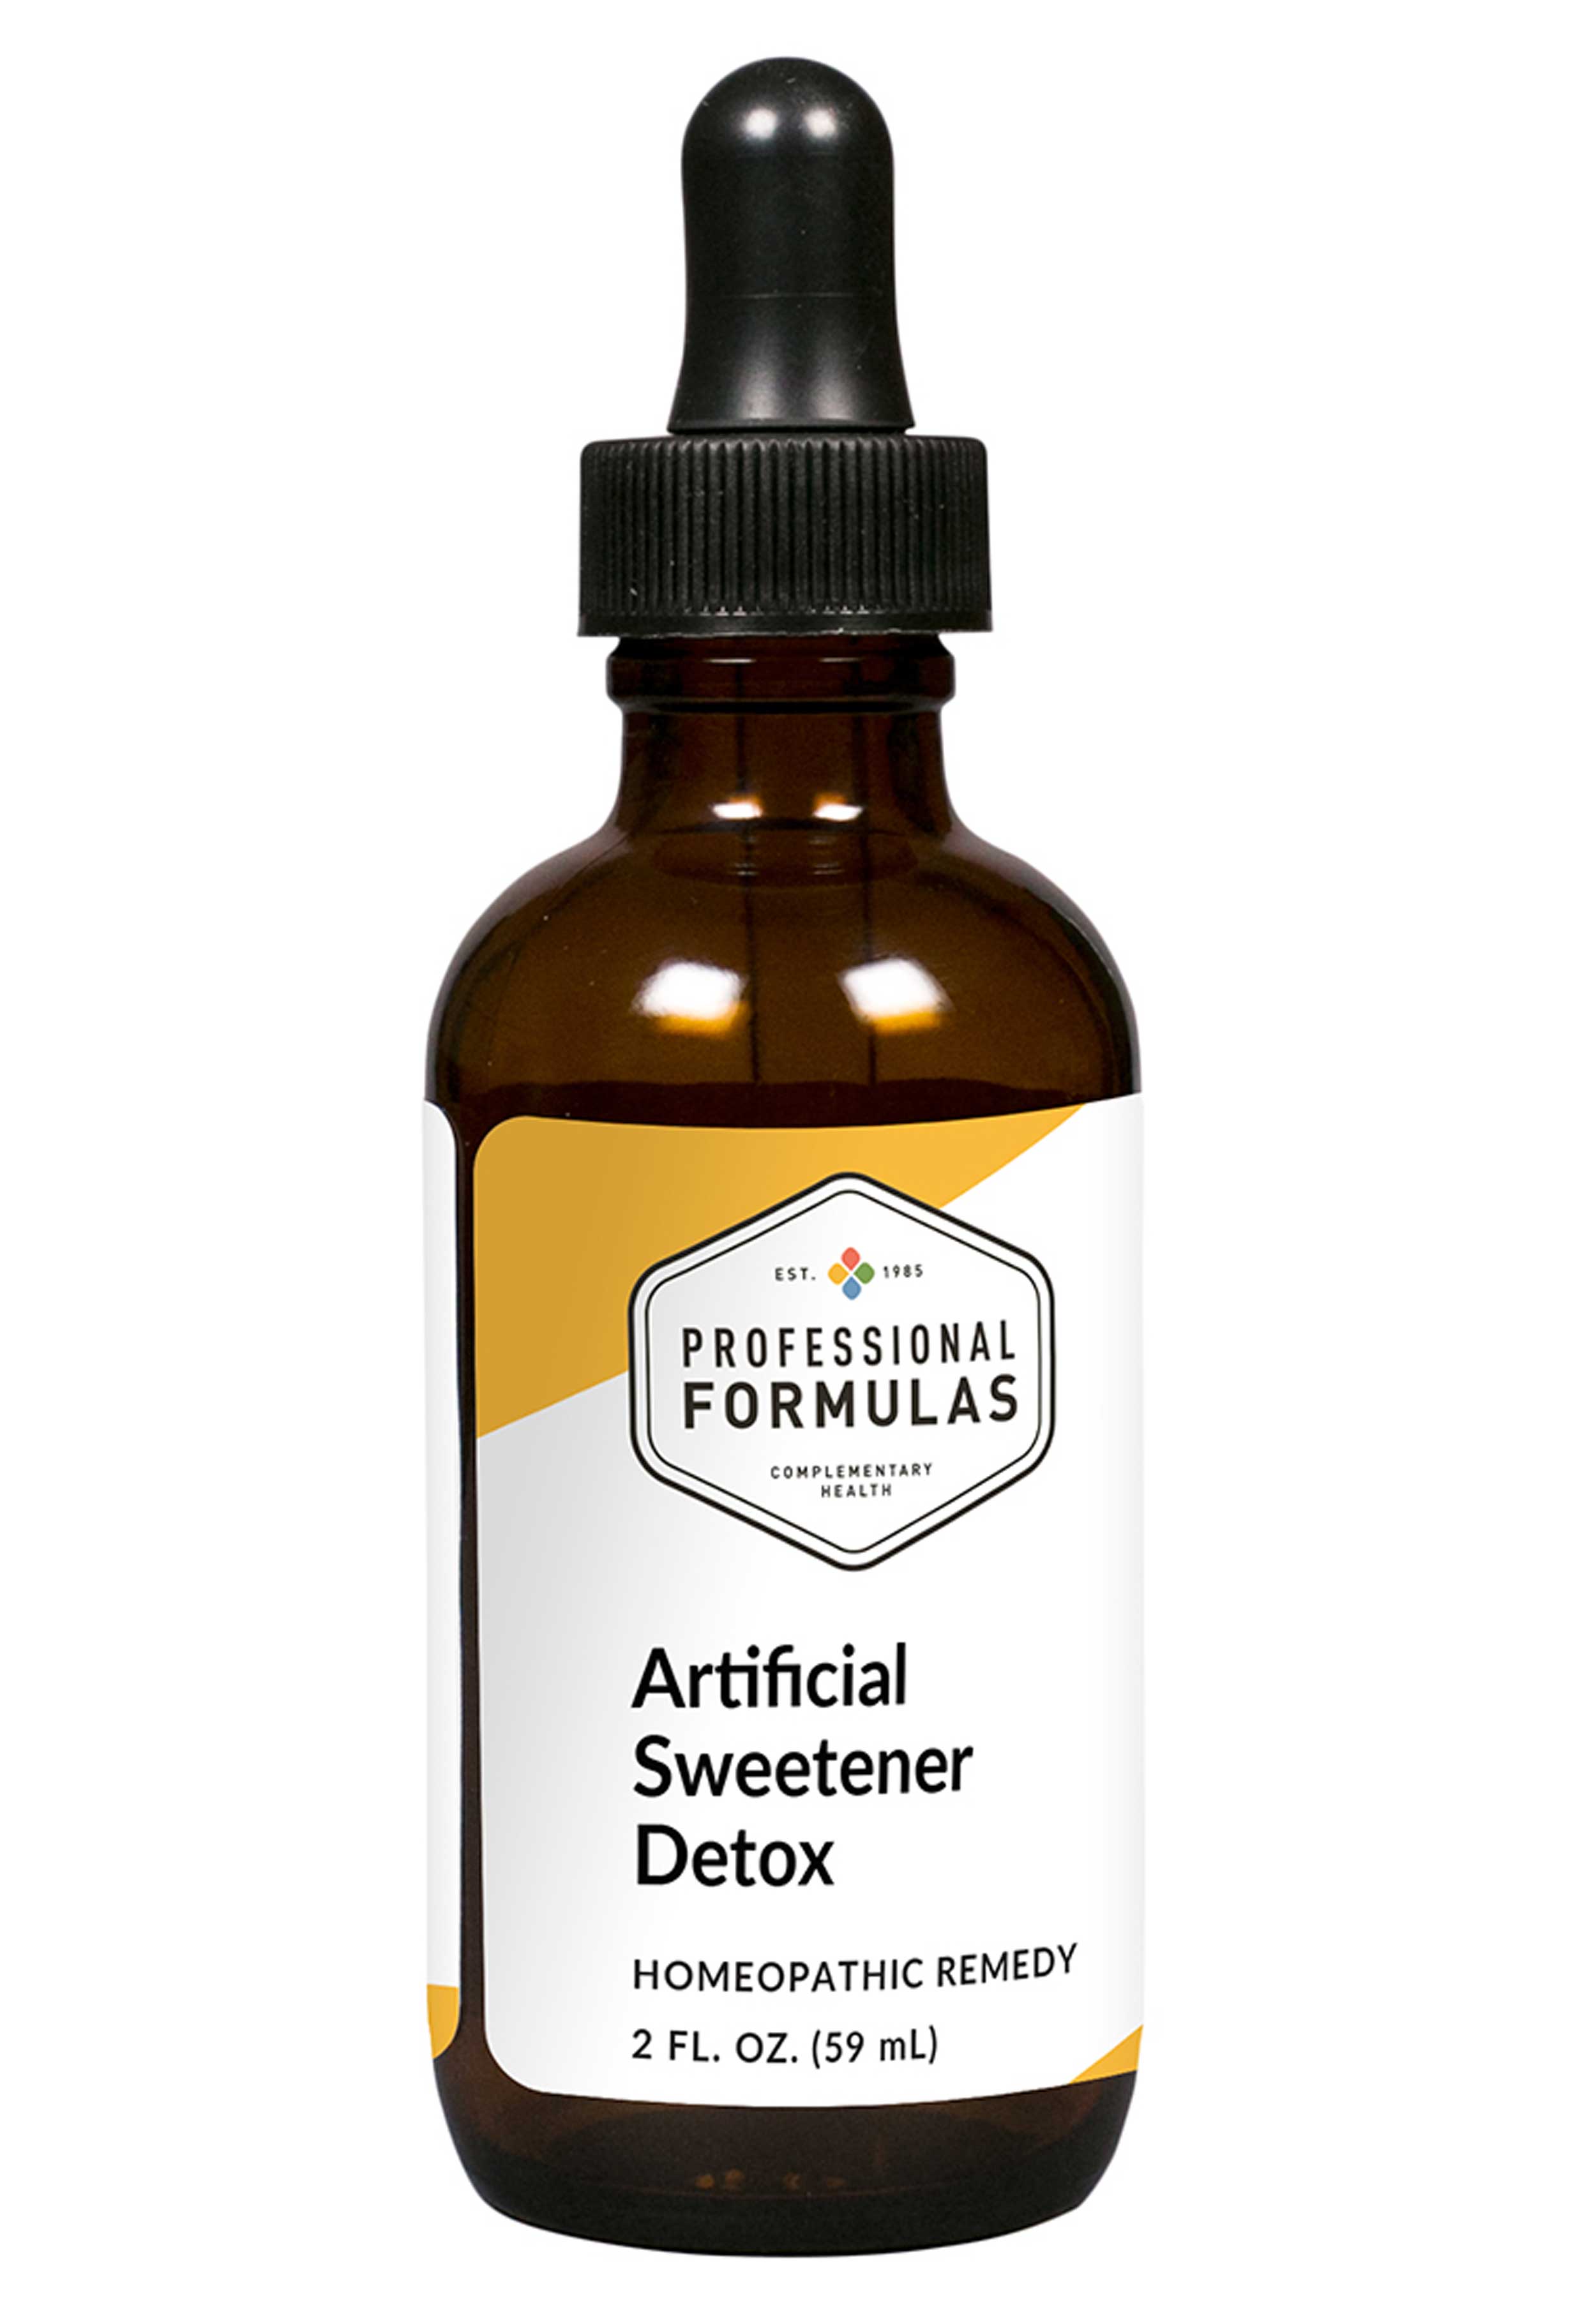 Professional Formulas Artificial Sweetener Detox